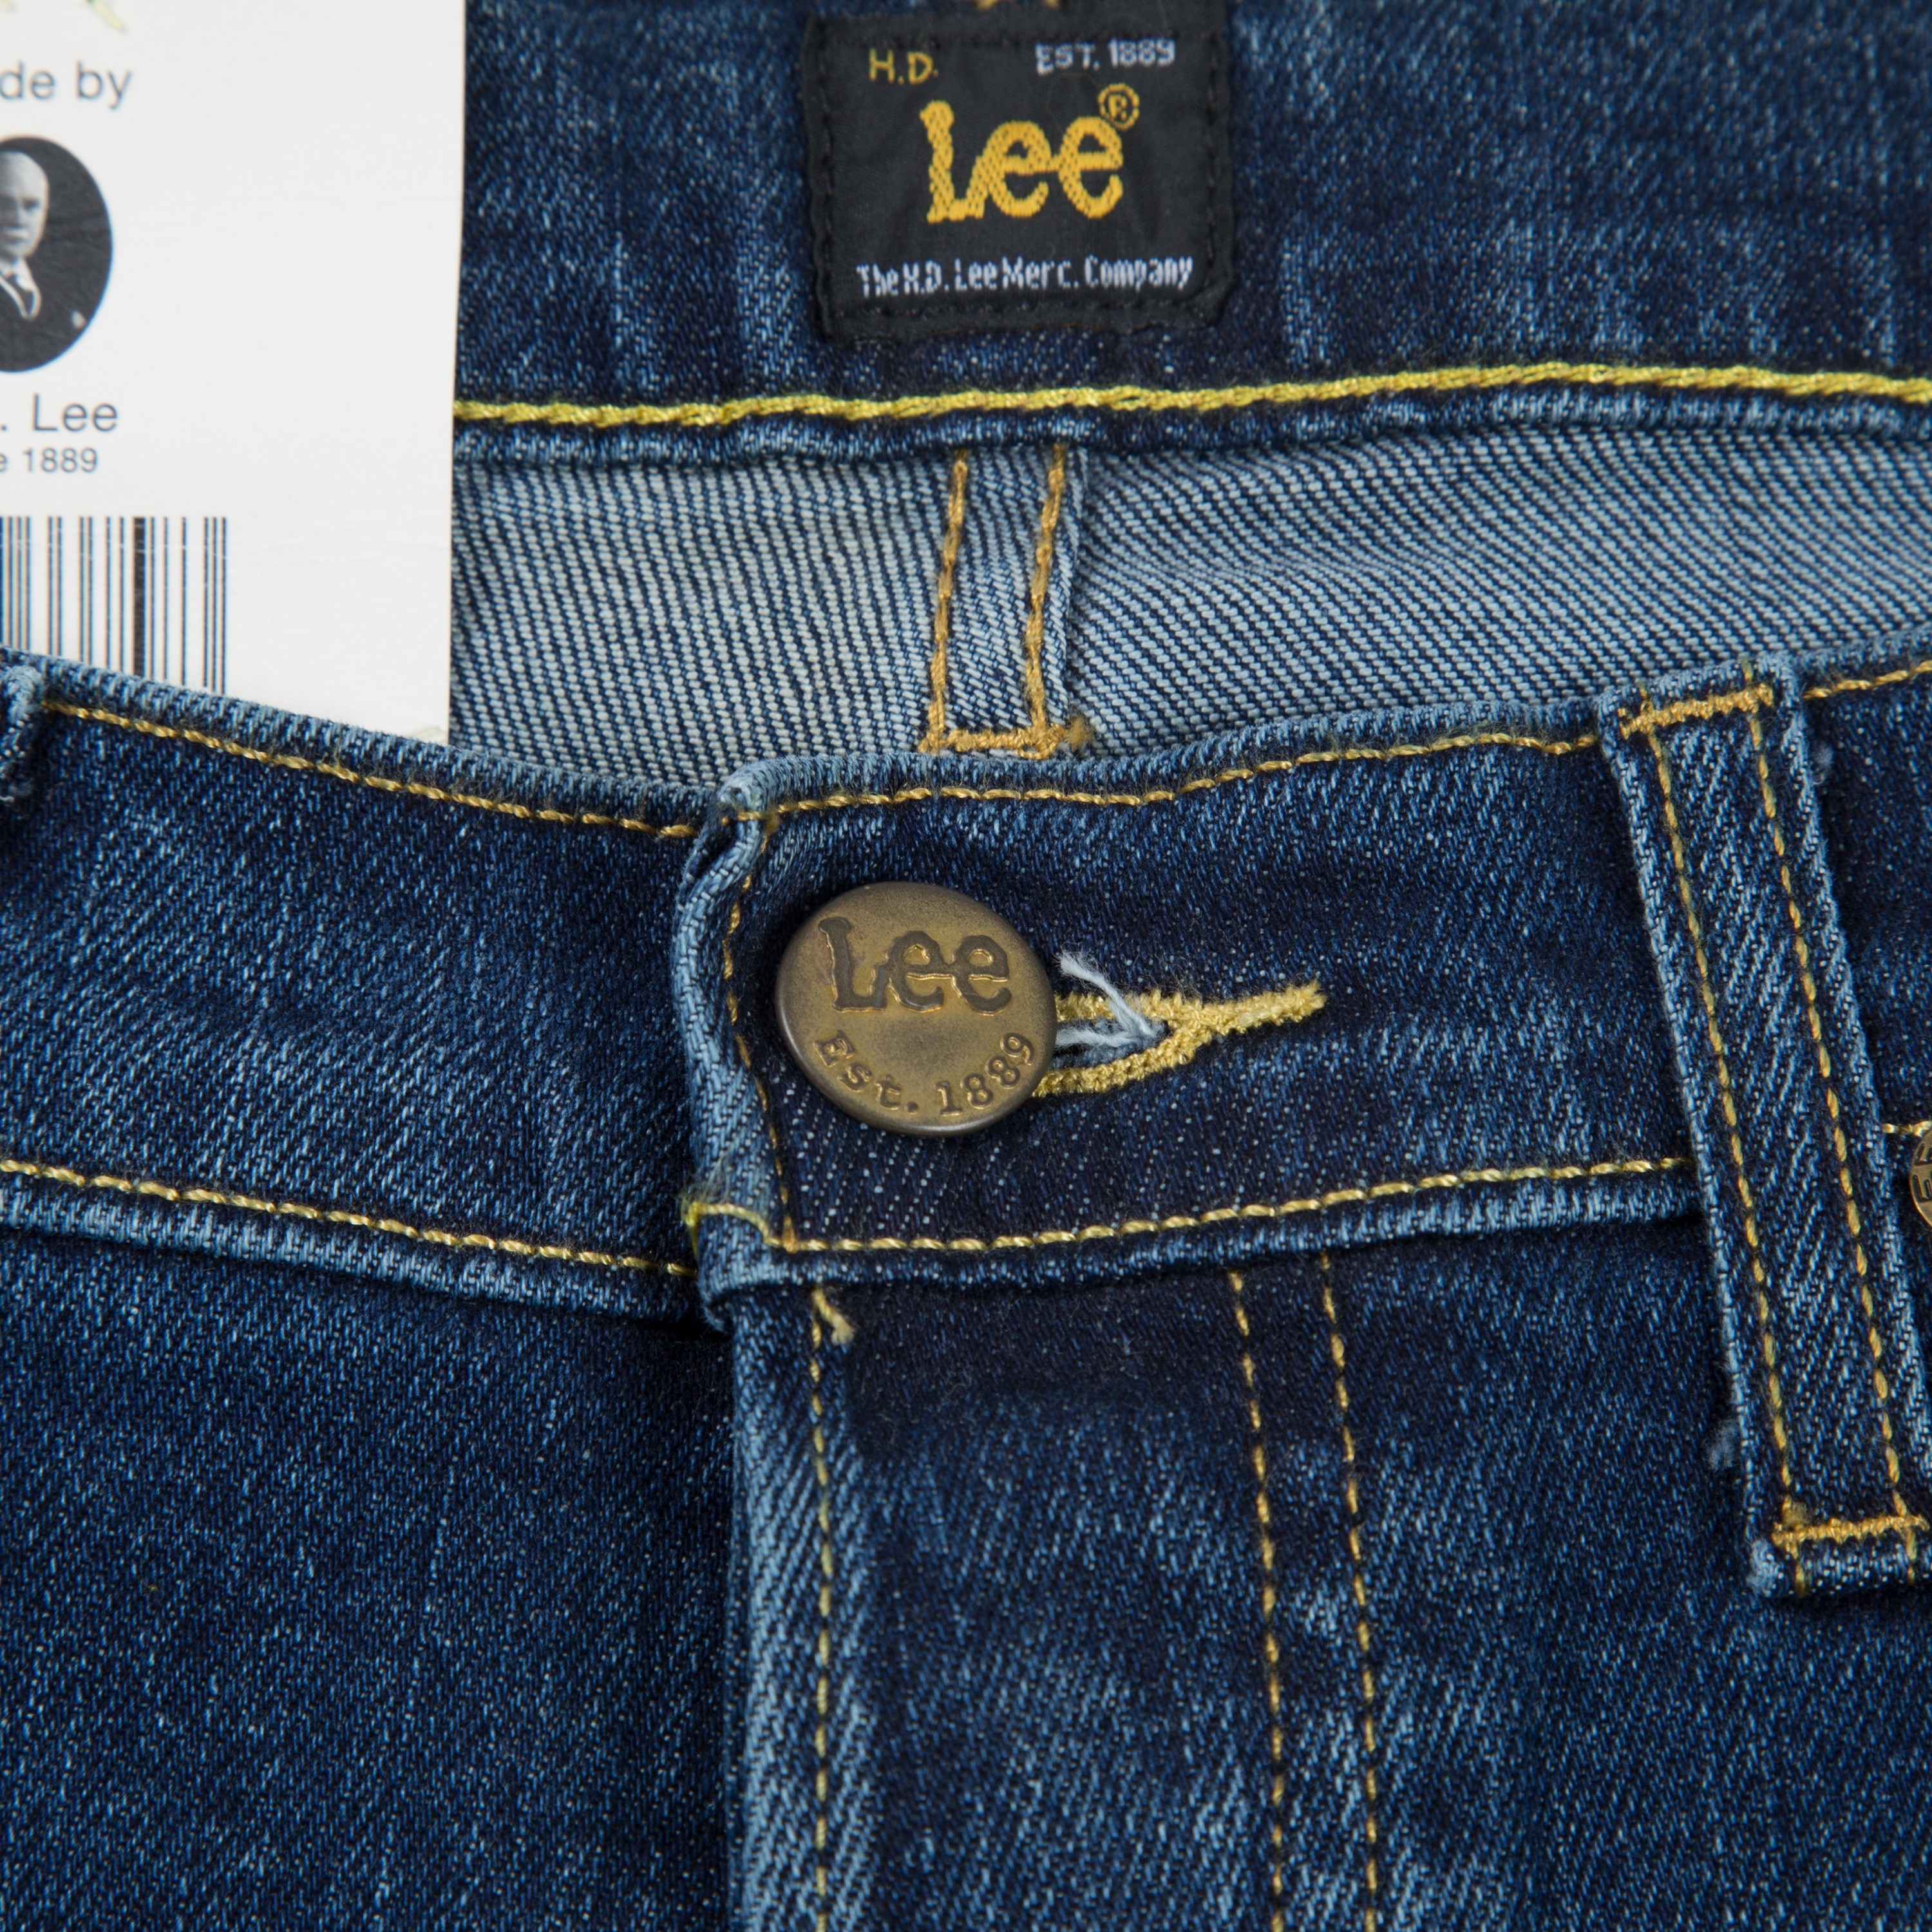 Lee Daren Regular Slim Denim Jeans (Epic Blue) - Consortium.